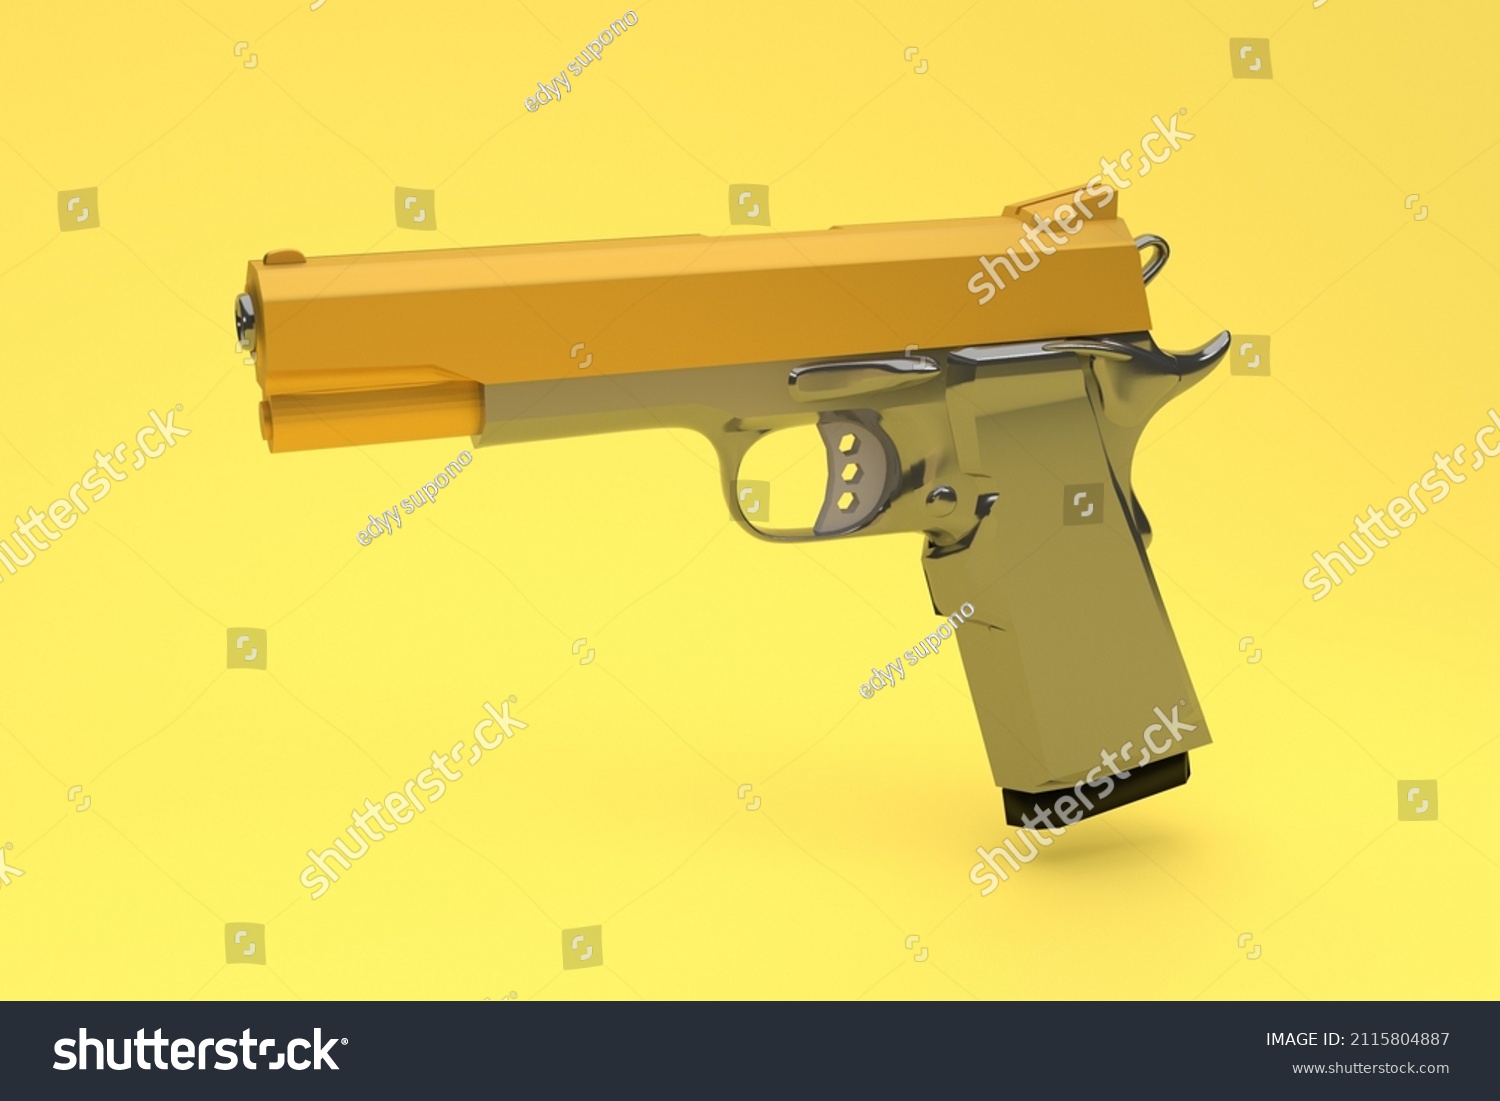 Gun Images, Stock Photos & Vectors | Shutterstock